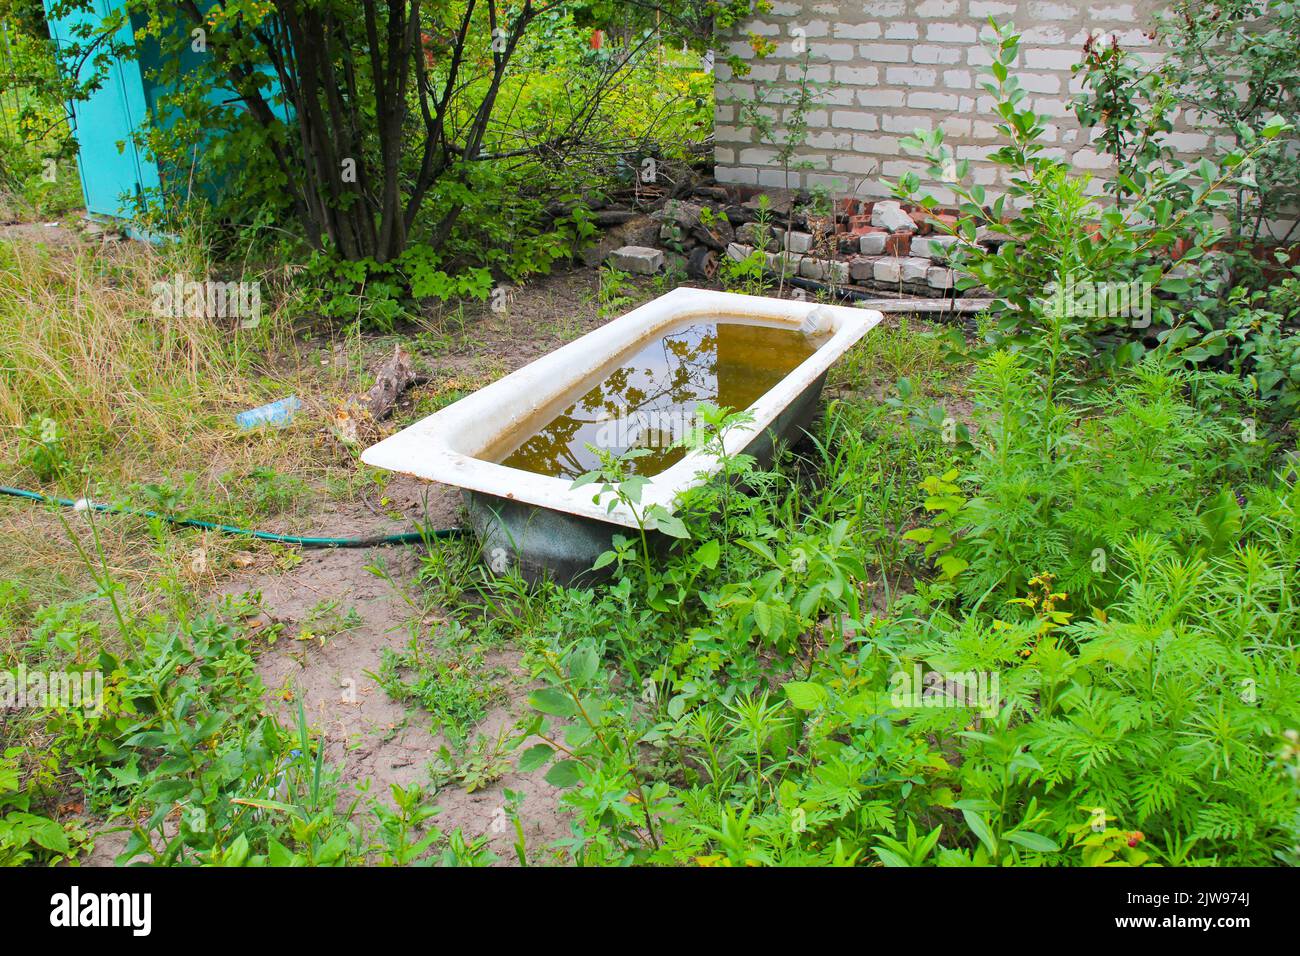 Bad mit schmutzigem Wasser im Garten. Konzept der Ökologie und der Umweltverschmutzung. Ökologische Katastrophe. Badewanne mit rostigem Wasser im grünen Gras daneben Stockfoto